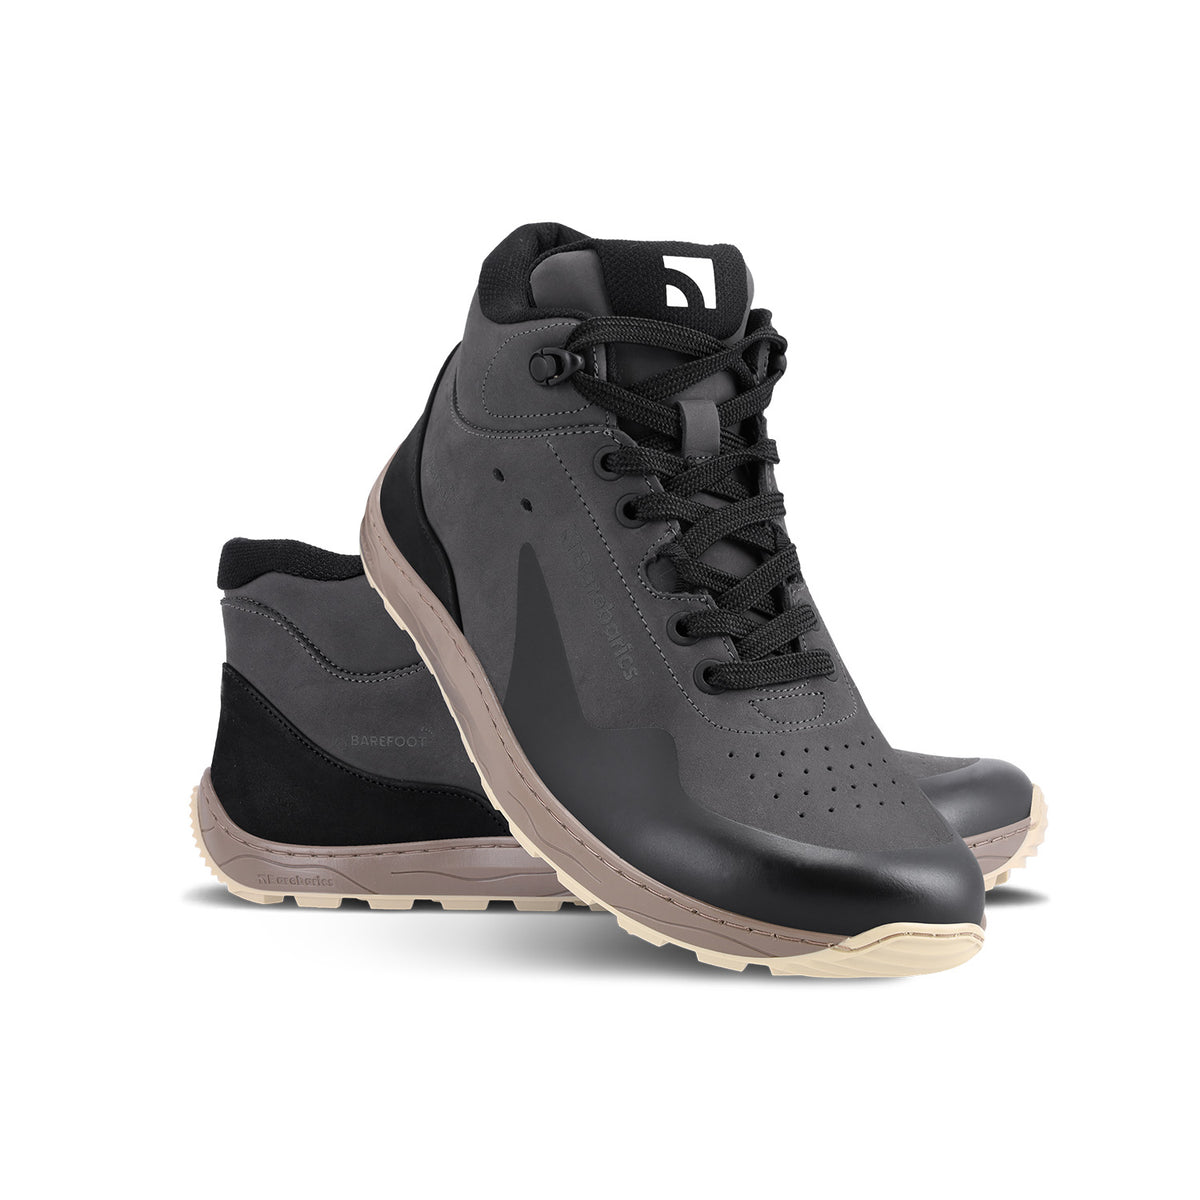 Barefoot Sneakers Barebarics Trekker - Dark Grey 2  - OzBarefoot